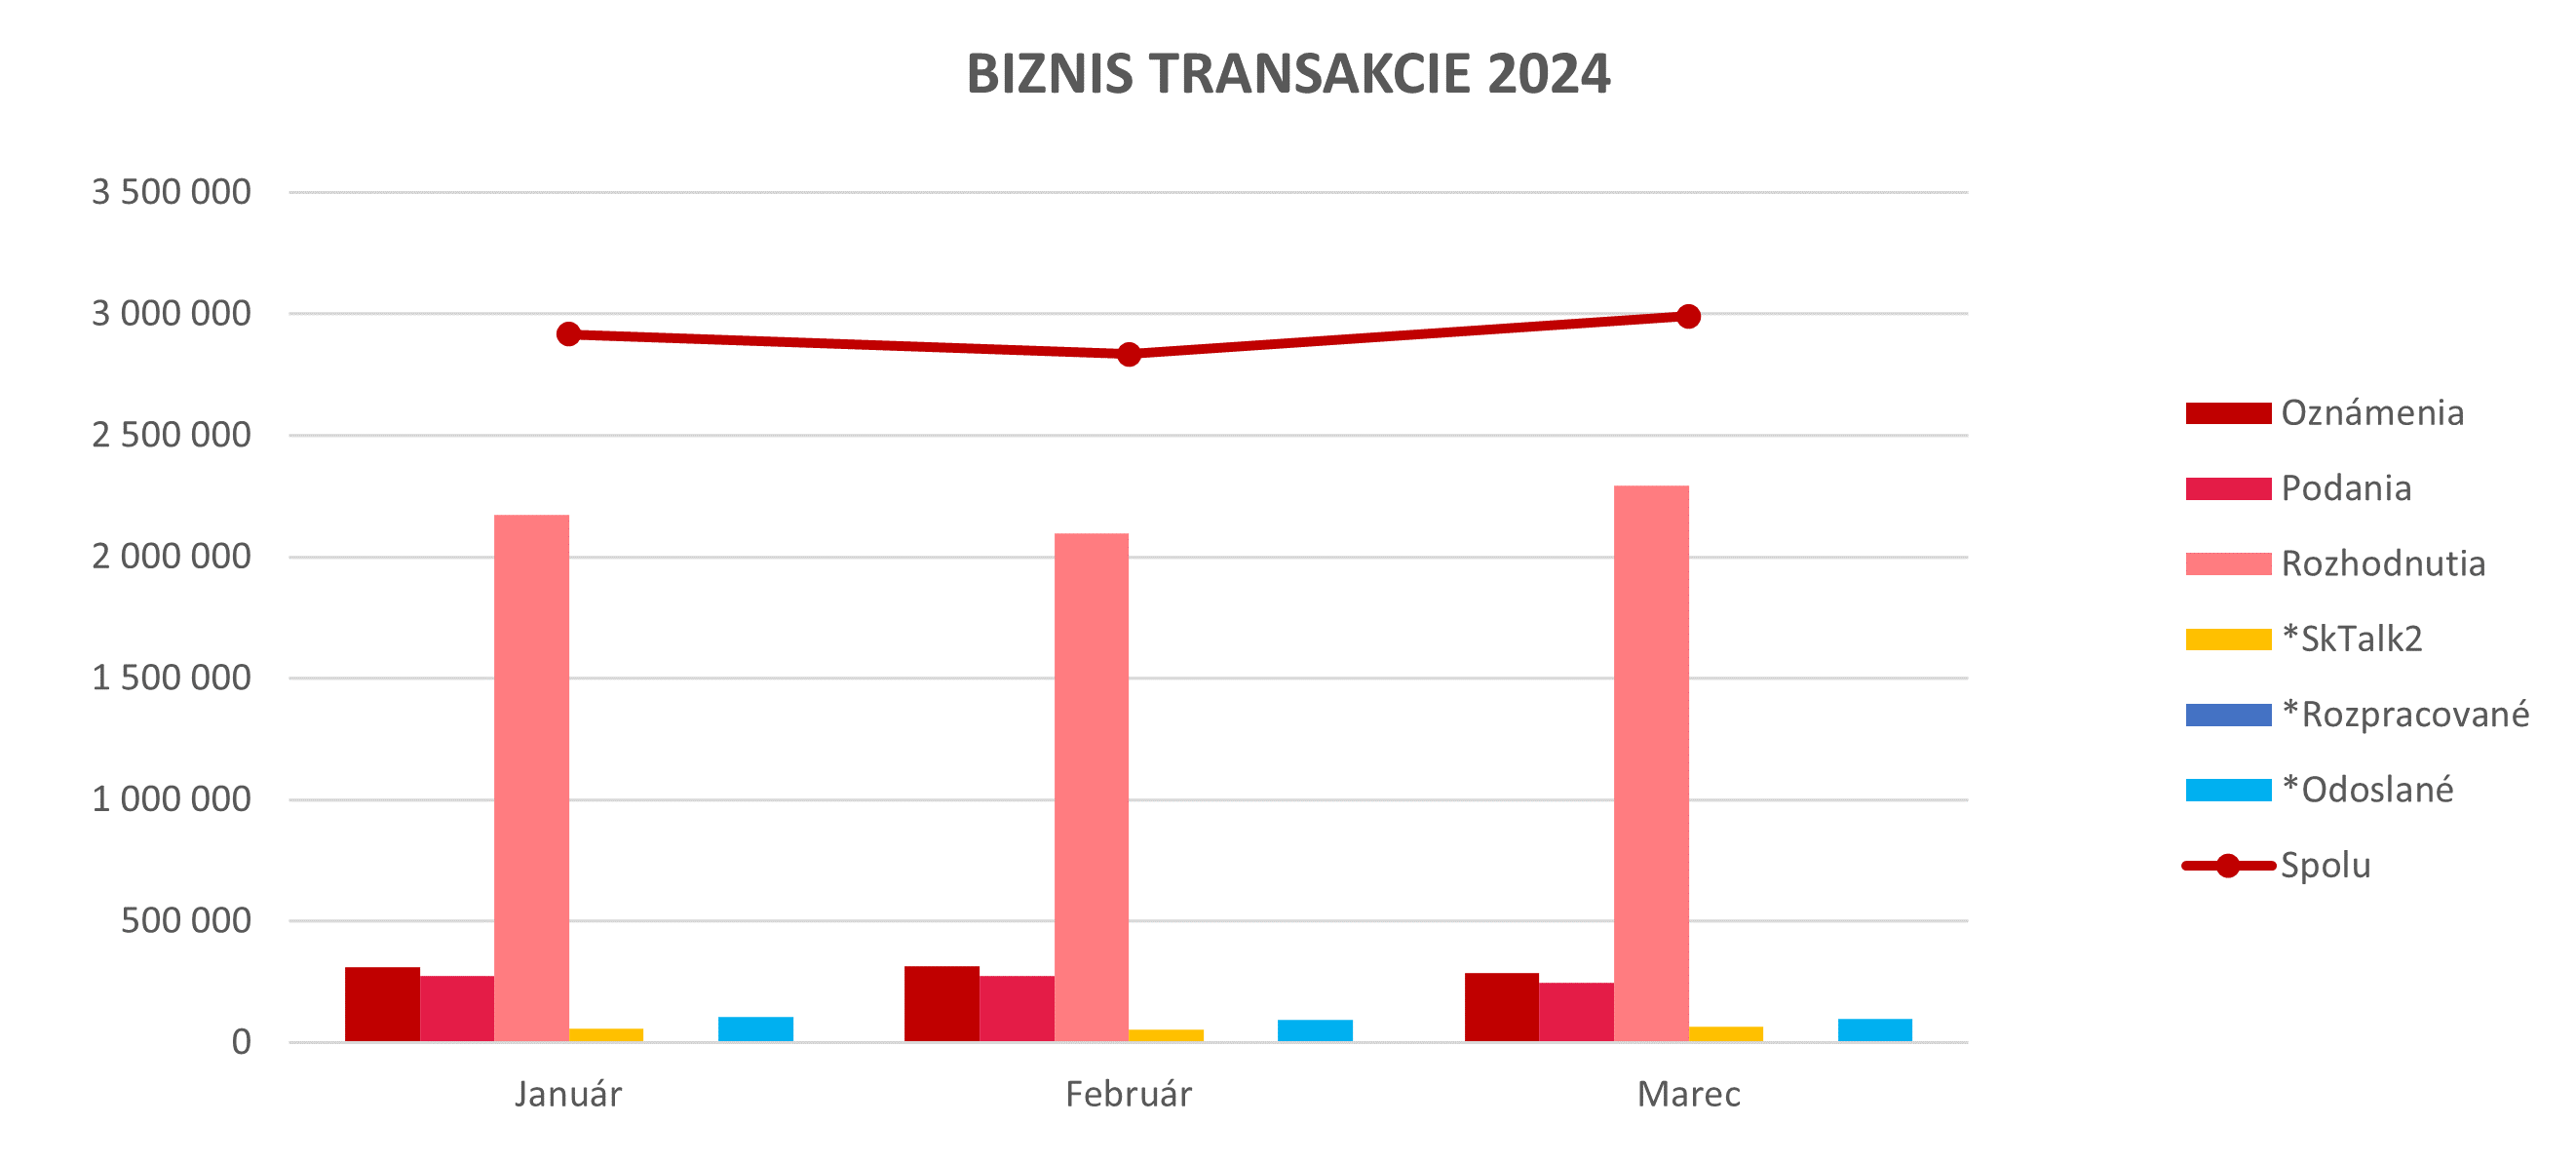 Ilustračný graf biznis transakcií za rok 2024.